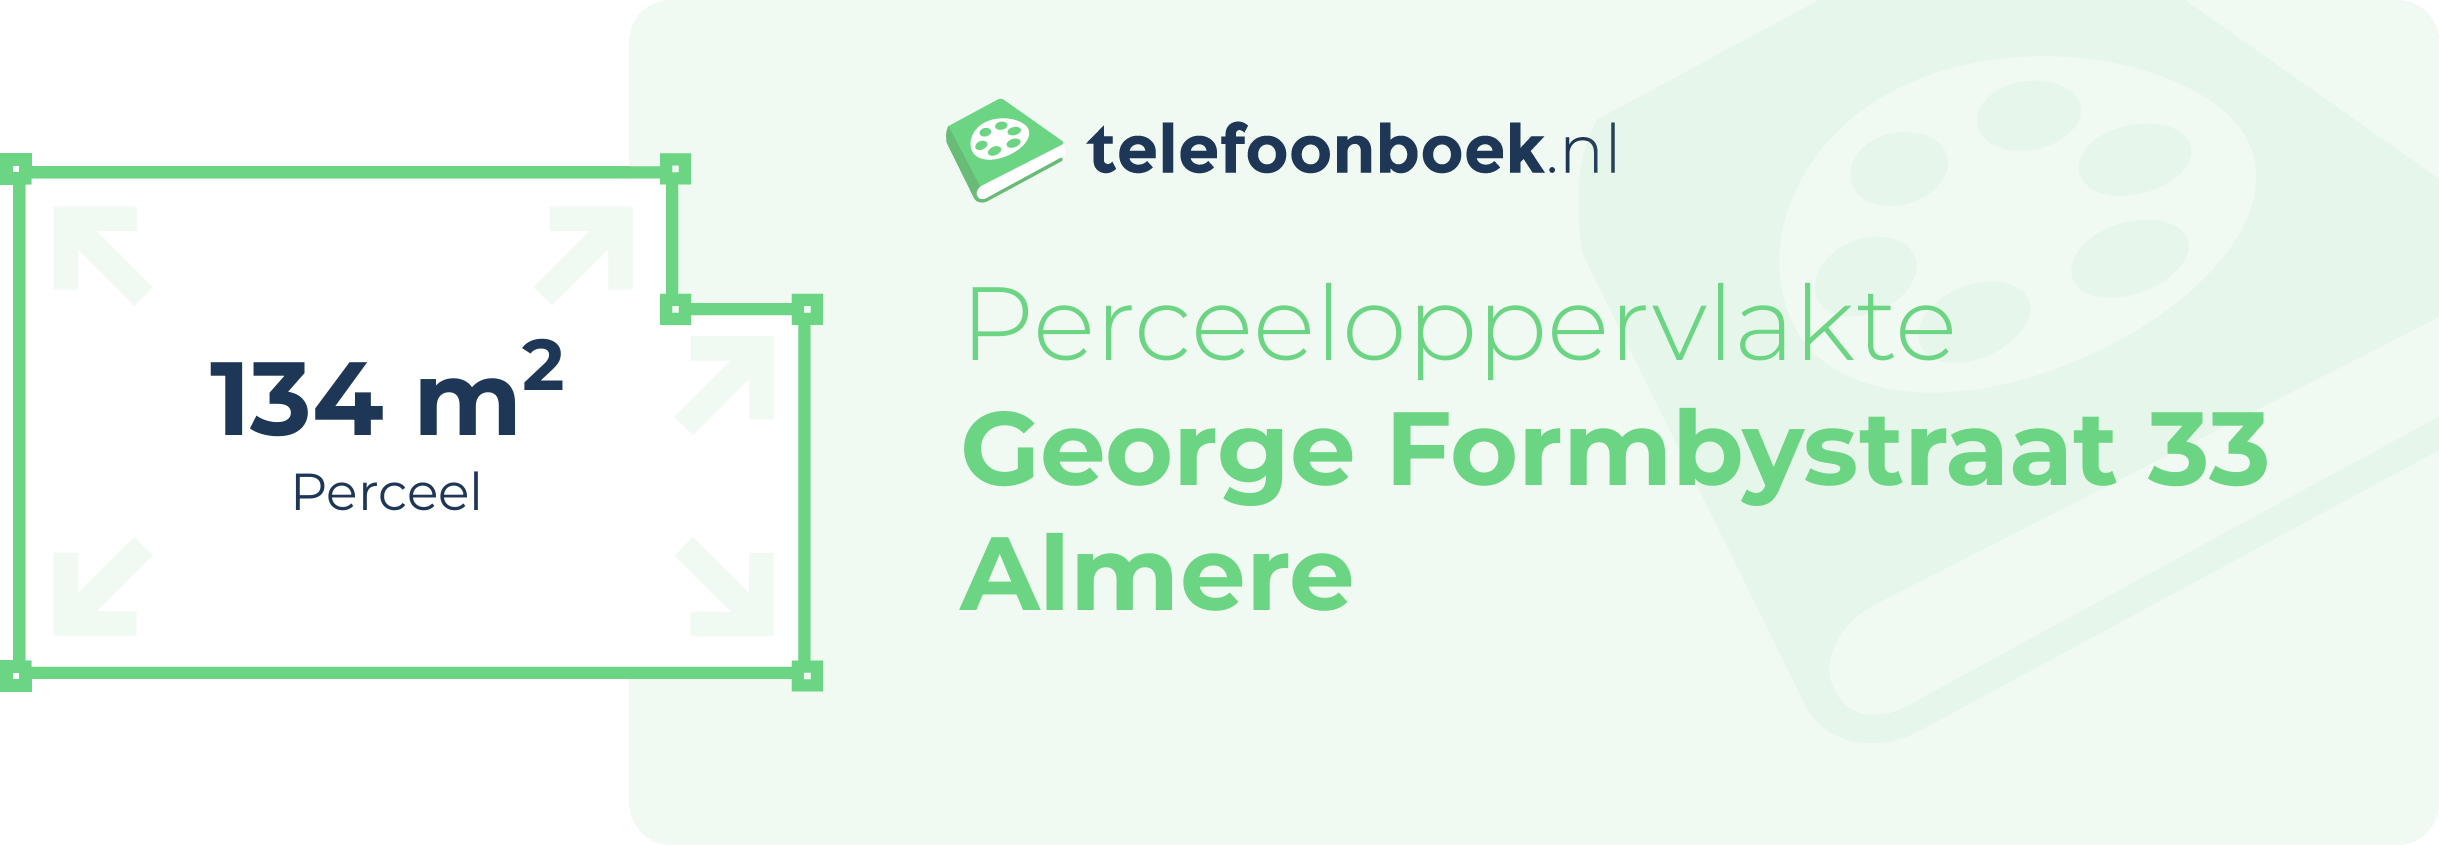 Perceeloppervlakte George Formbystraat 33 Almere